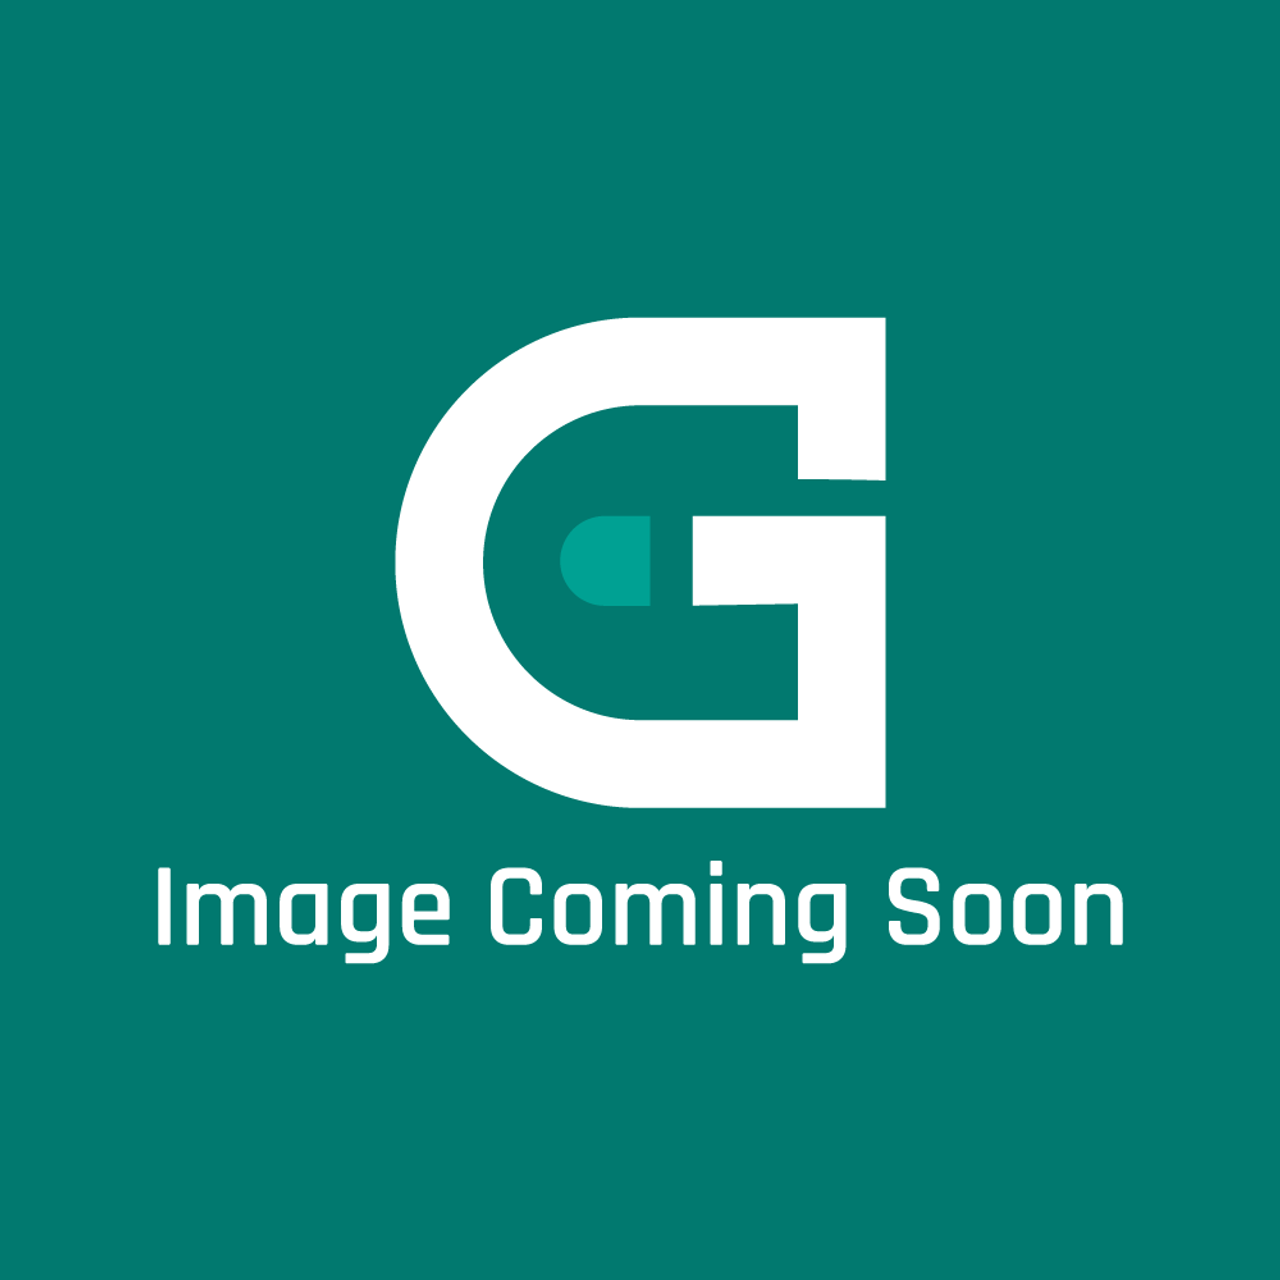 AGA Marvel RG4M998359 - Blast Tube L/O Bfb01210/002 - Image Coming Soon!